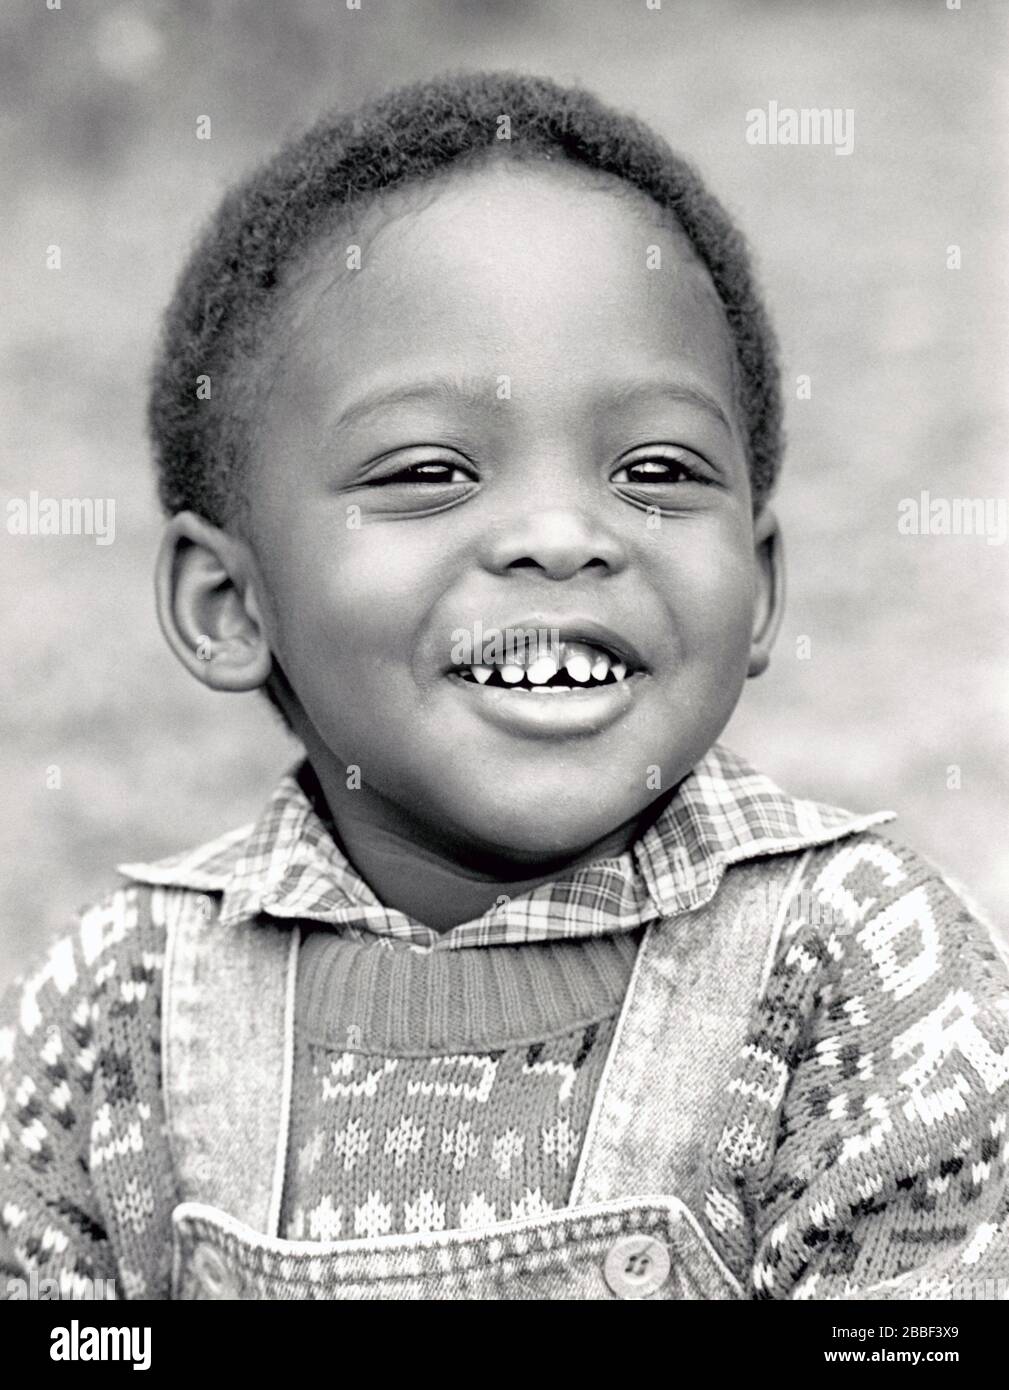 Small boy UK 1988 MR Stock Photo